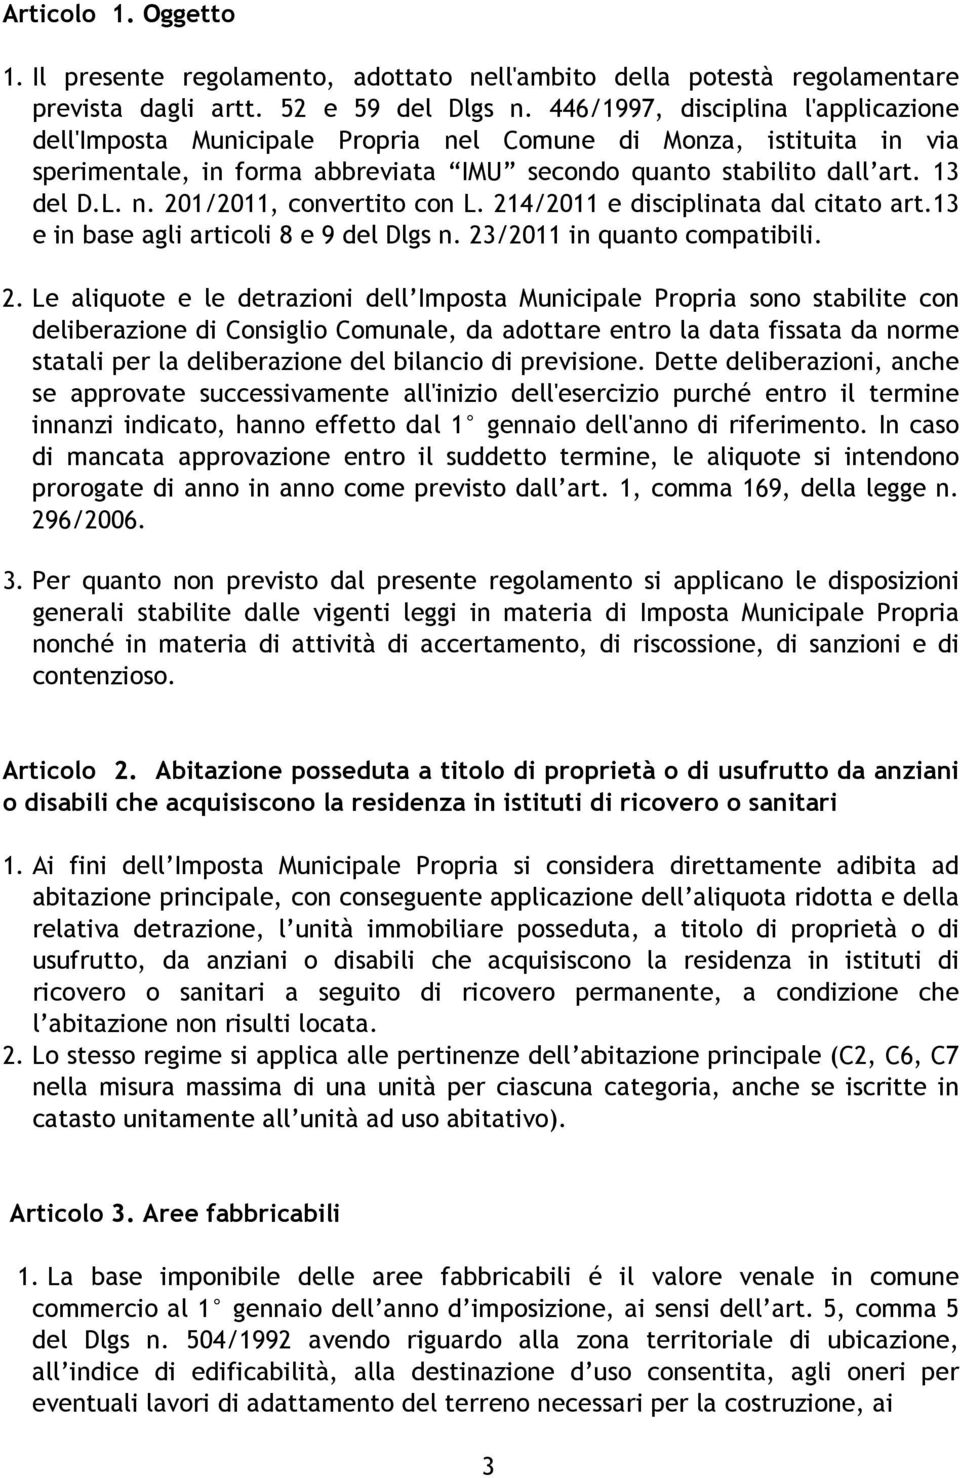 214/2011 e disciplinata dal citato art.13 e in base agli articoli 8 e 9 del Dlgs n. 23